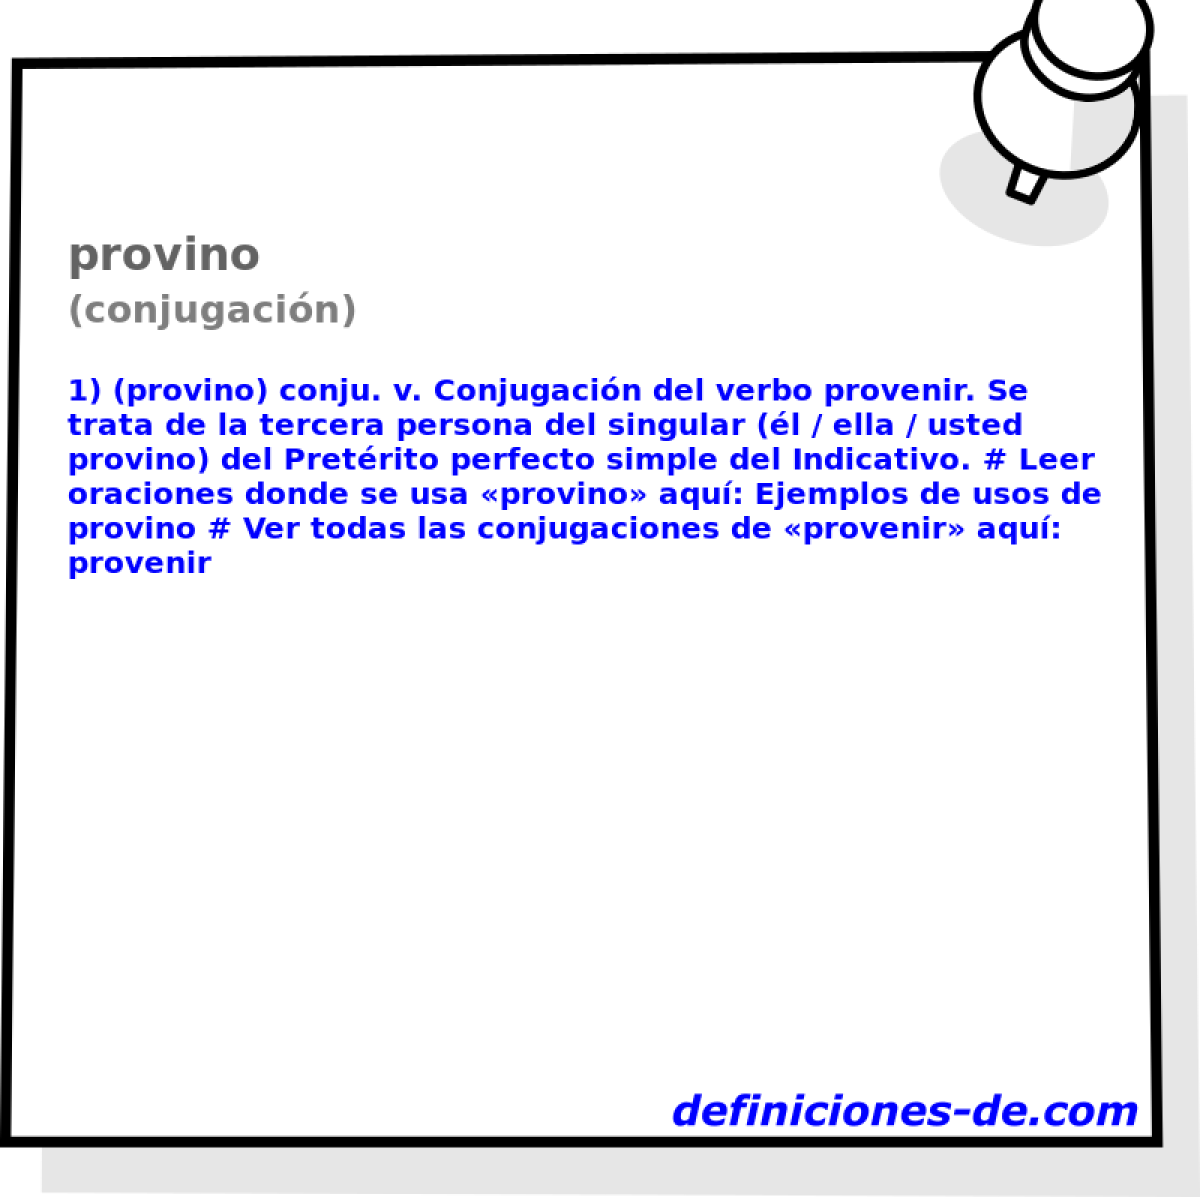 provino (conjugacin)